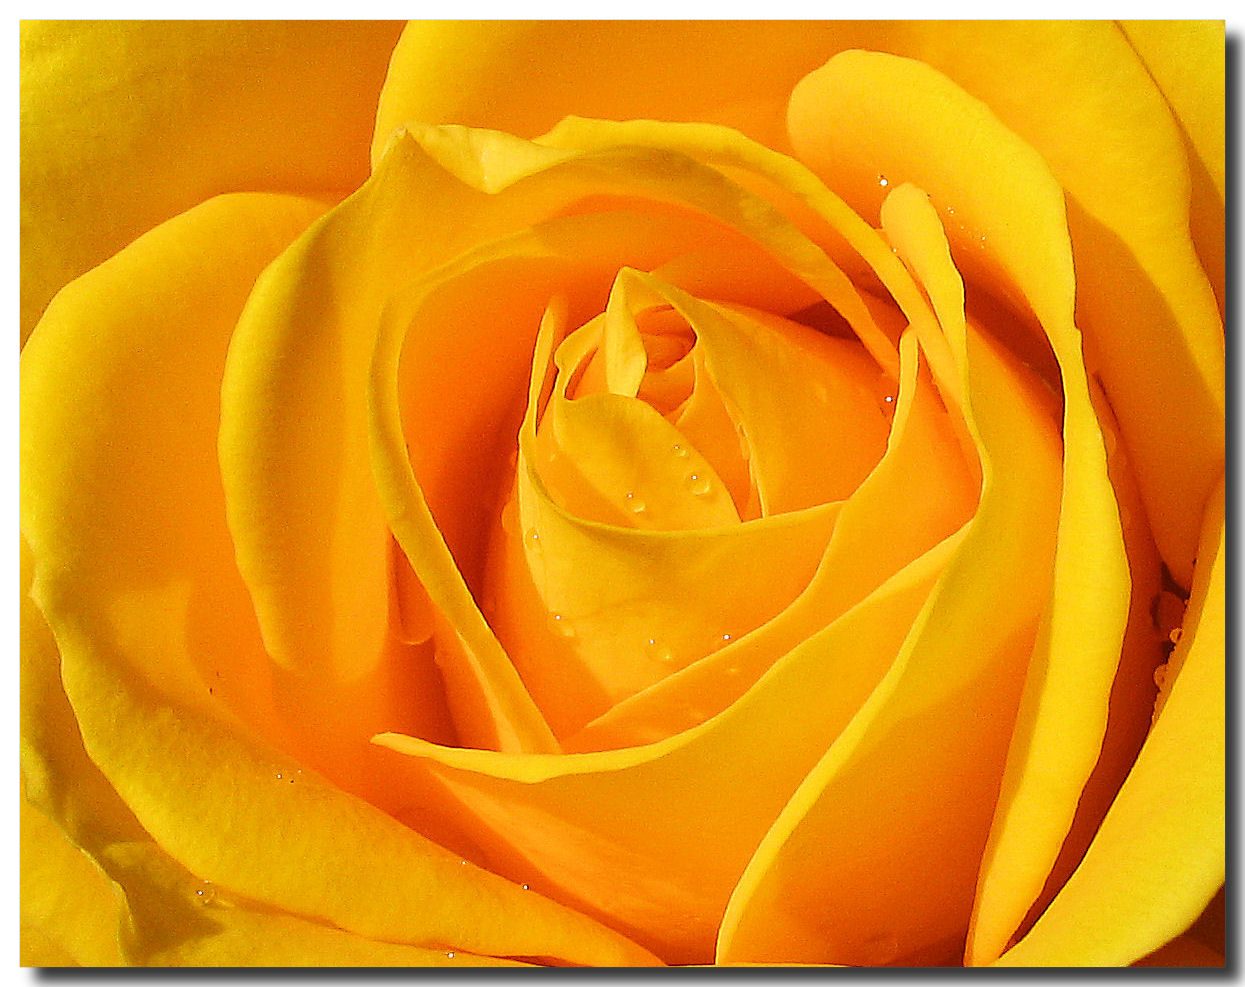 77+] Yellow Rose Flower Wallpaper - WallpaperSafari